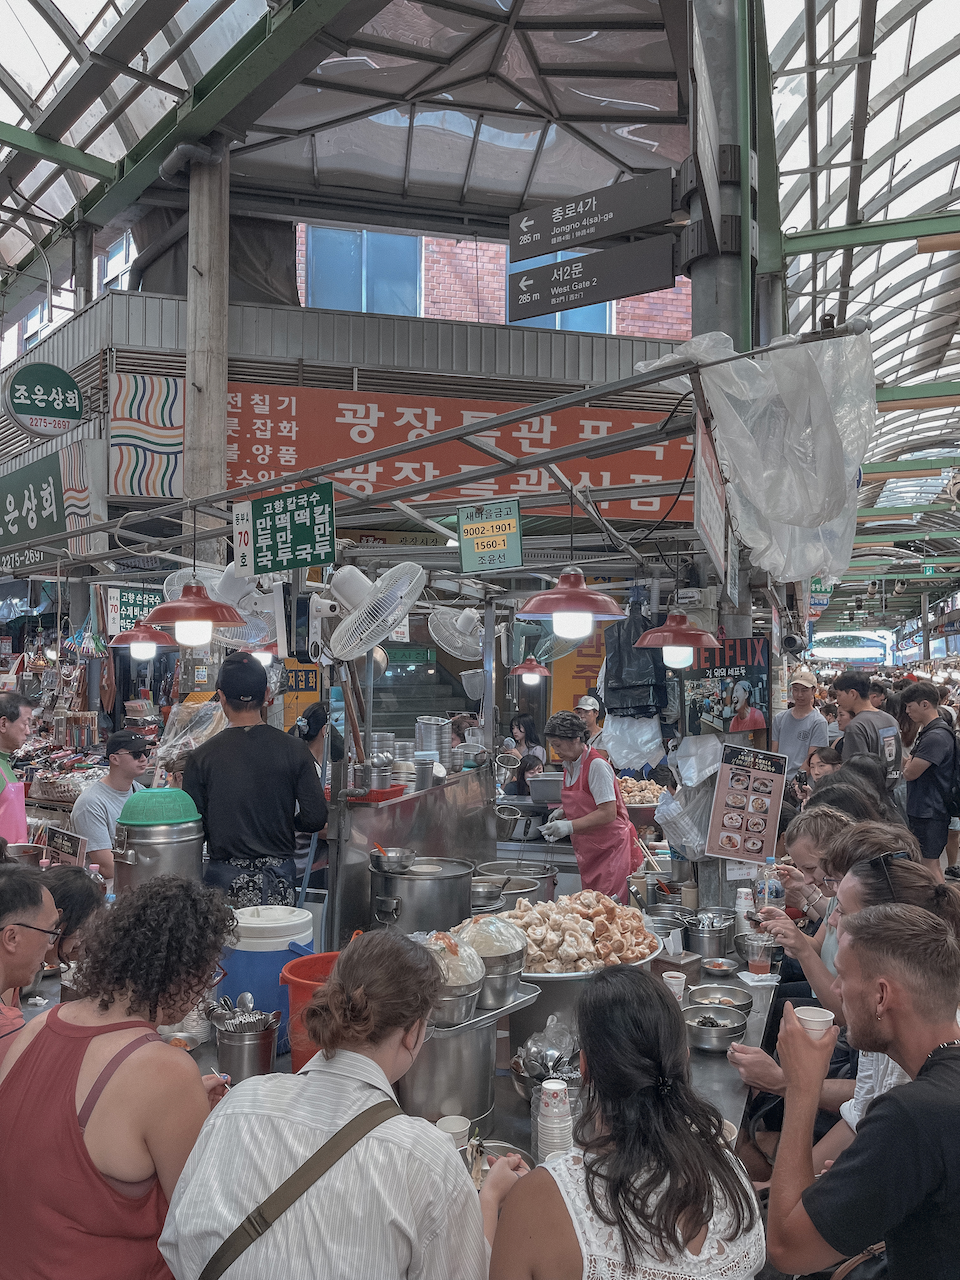 Les stands de nourriture au marché Gwangjang - Séoul - Corée du Sud